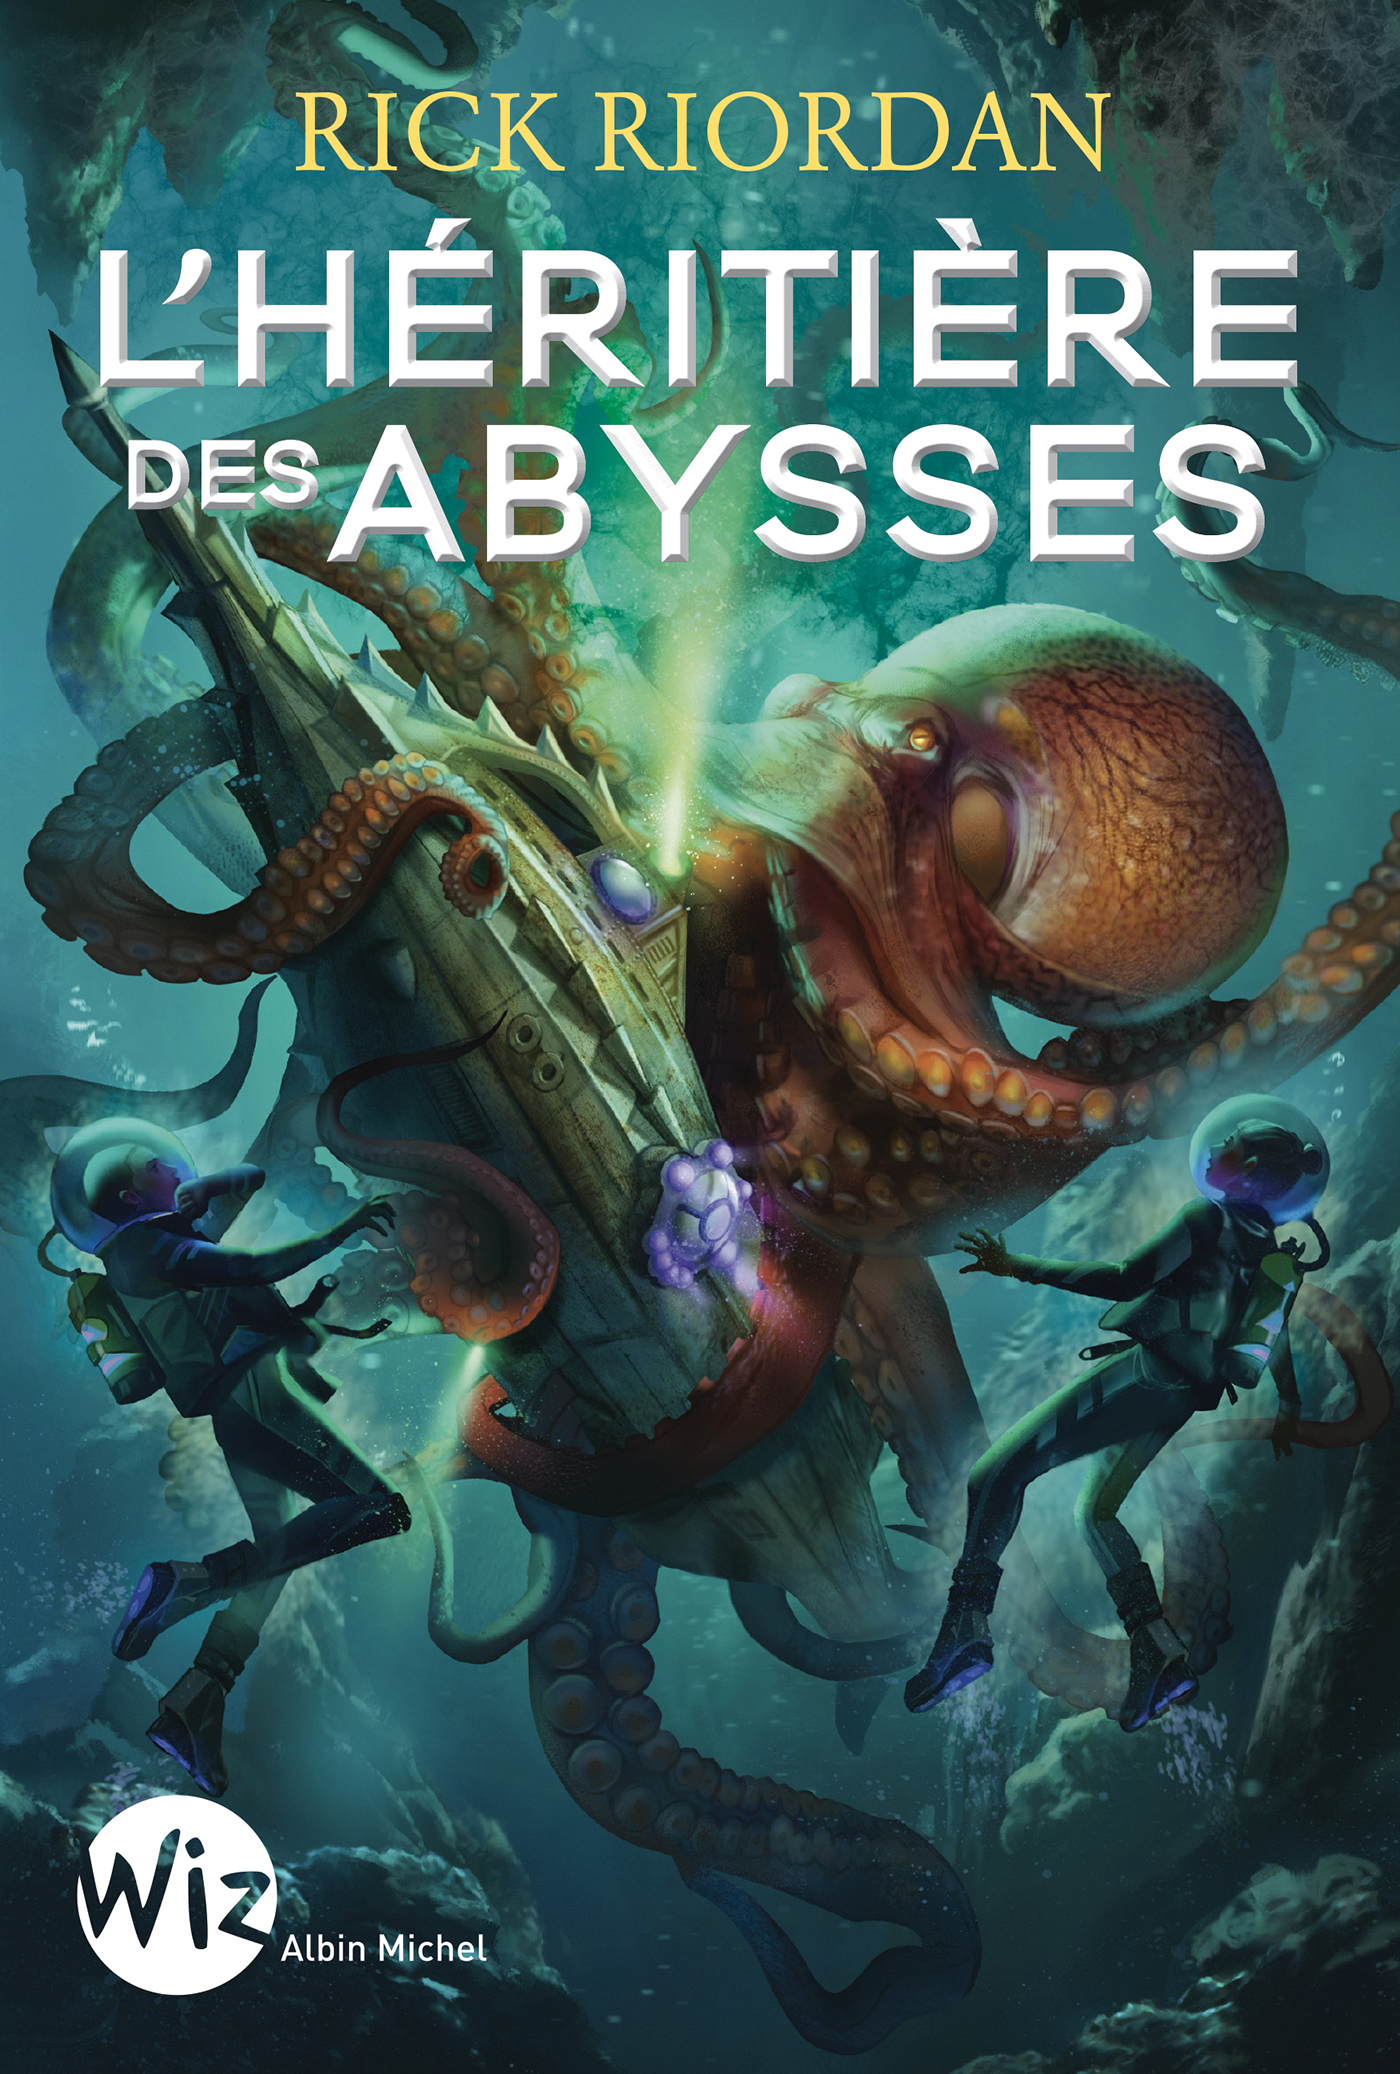 Afficher "L'Héritière des abysses"